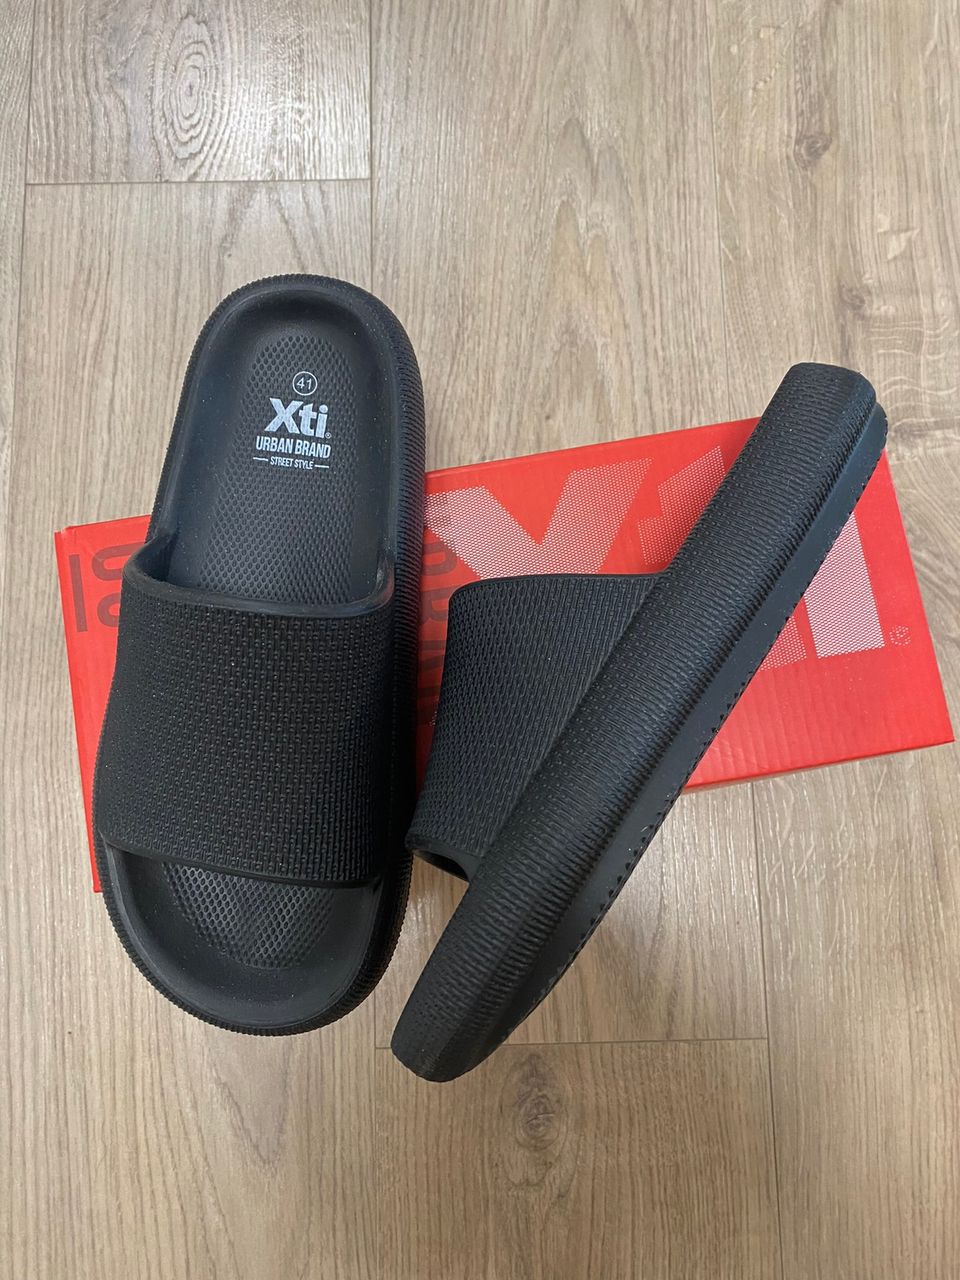 Pehmoiset sandaalit 41, uudet, Xti urban brand